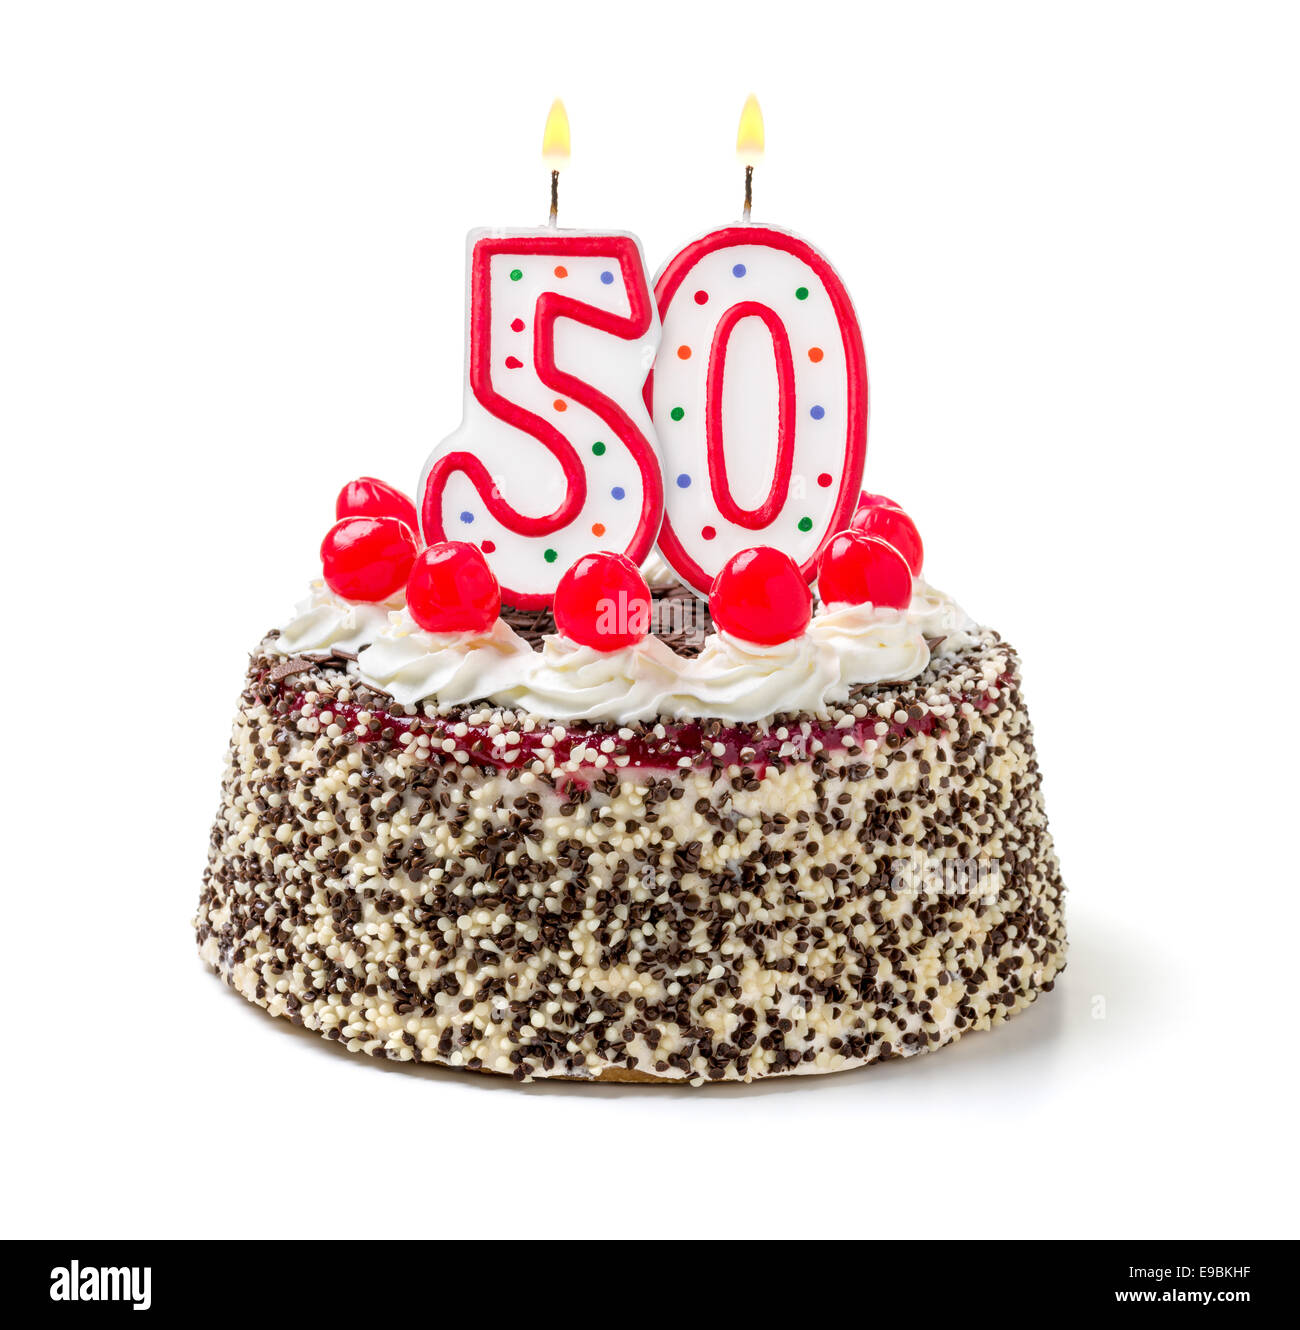 Torta del 50 aniversario Imágenes recortadas de stock - Alamy